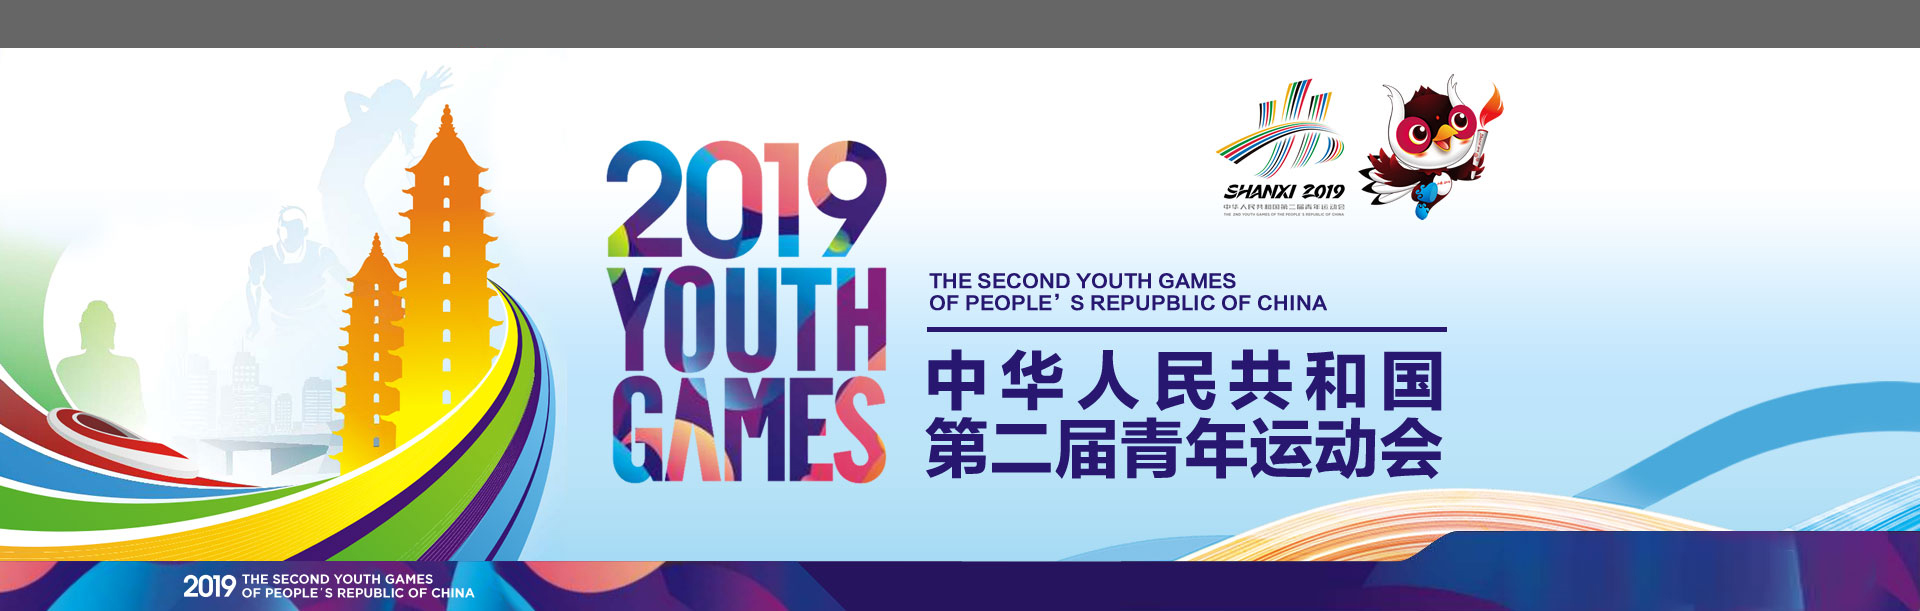 中華人民共和國第二屆青年運動會